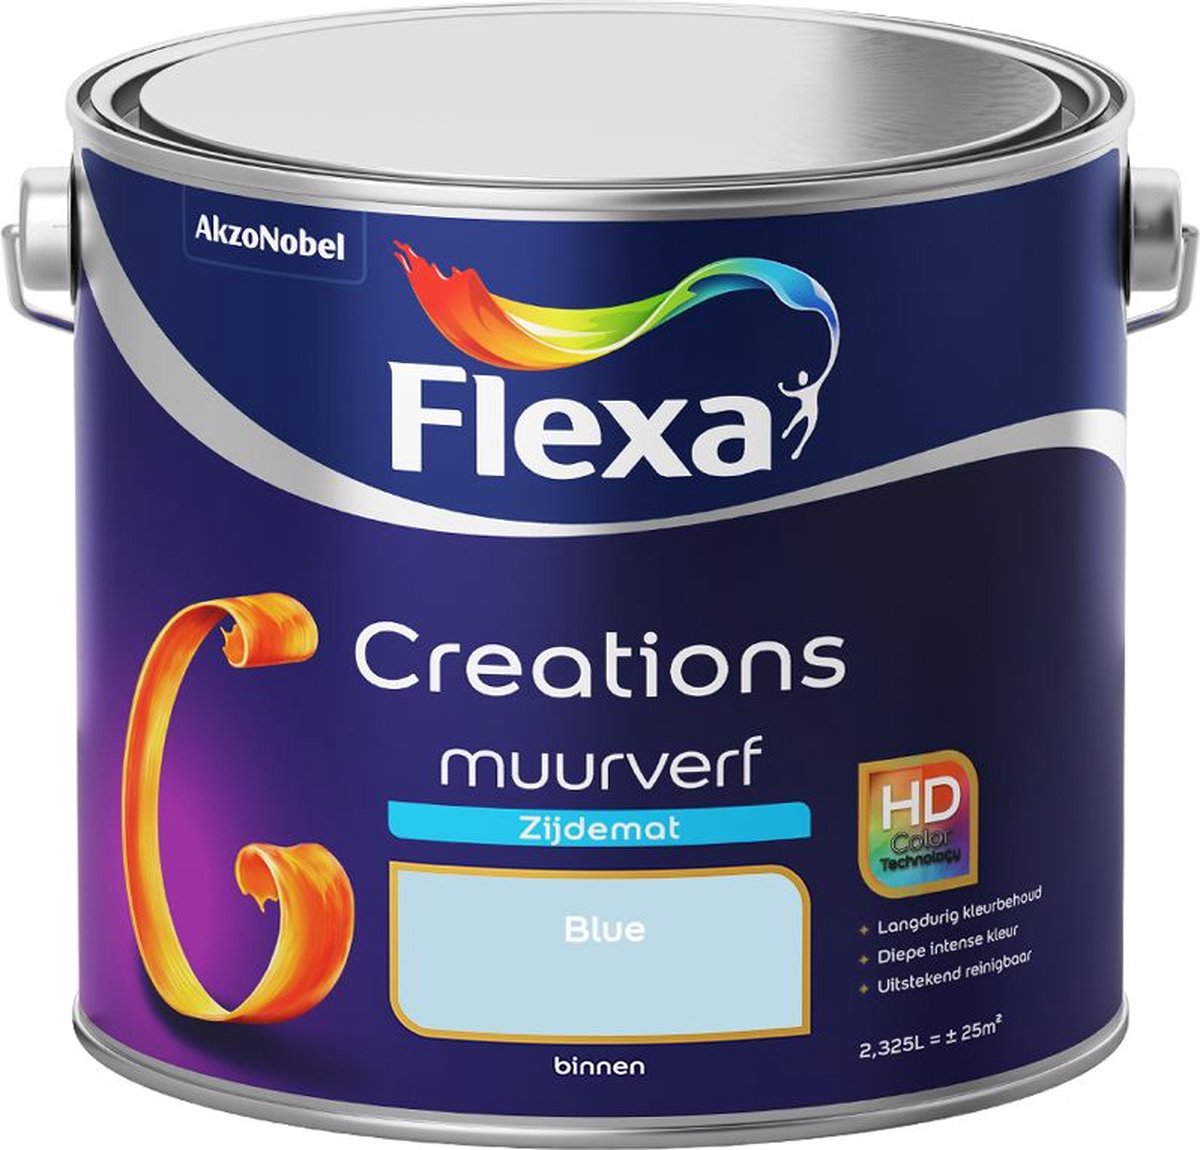 Flexa | Creations Muurverf Zijdemat | Blue - Kleur van het jaar 2010 | 2.5L